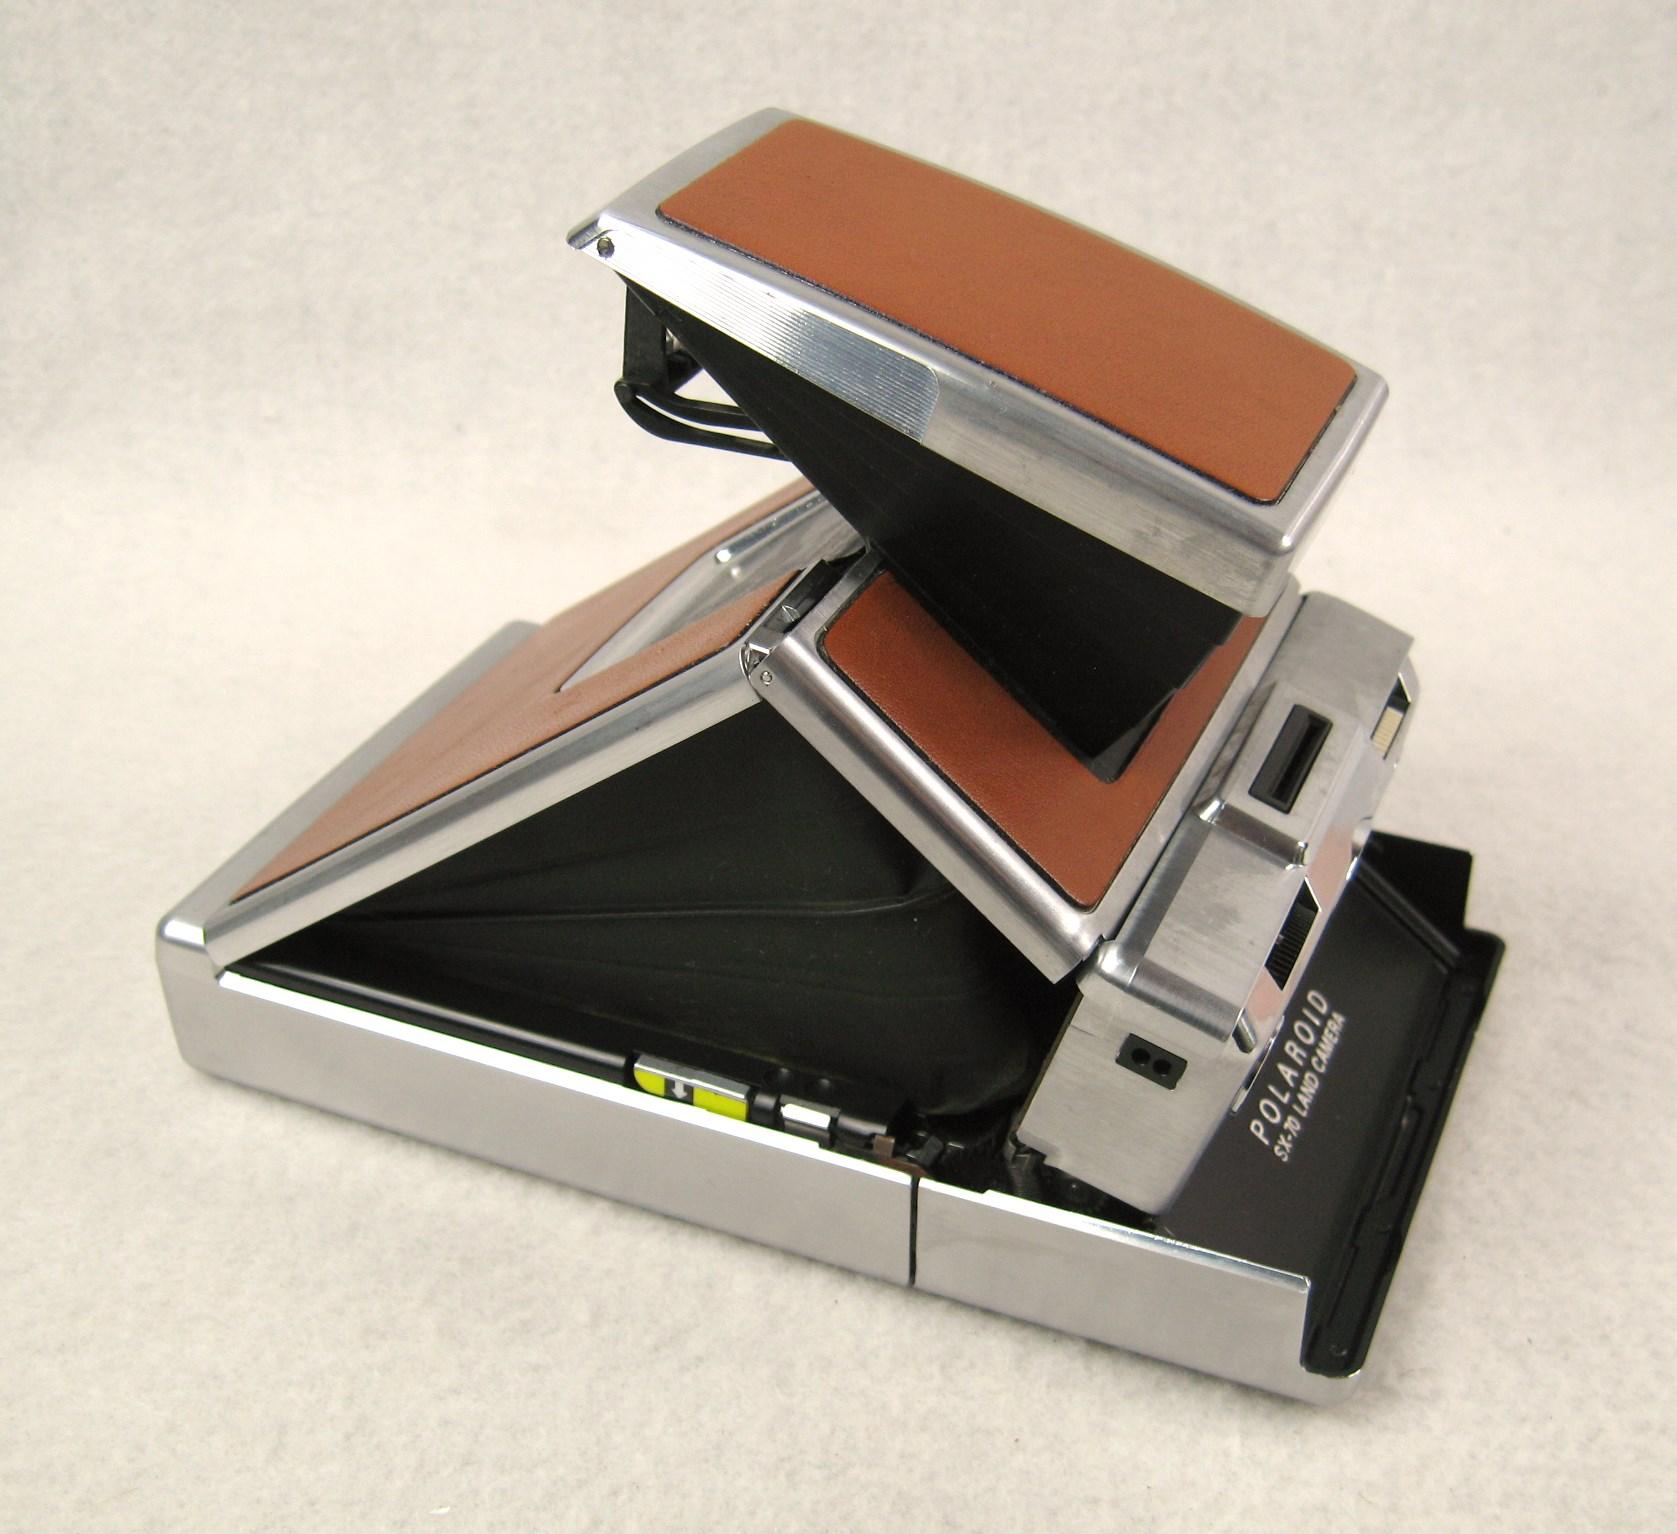 Eine sehr schöne Polaroid SX - 70 Kamera, entwickelt von Edwin Lande und Richard Wareham, entworfen von Henry Dreyfuss Associates. Das war damals der neueste Stand der Technik und revolutionär. Das Gehäuse aus gebürstetem Edelstahl und Leder, eine